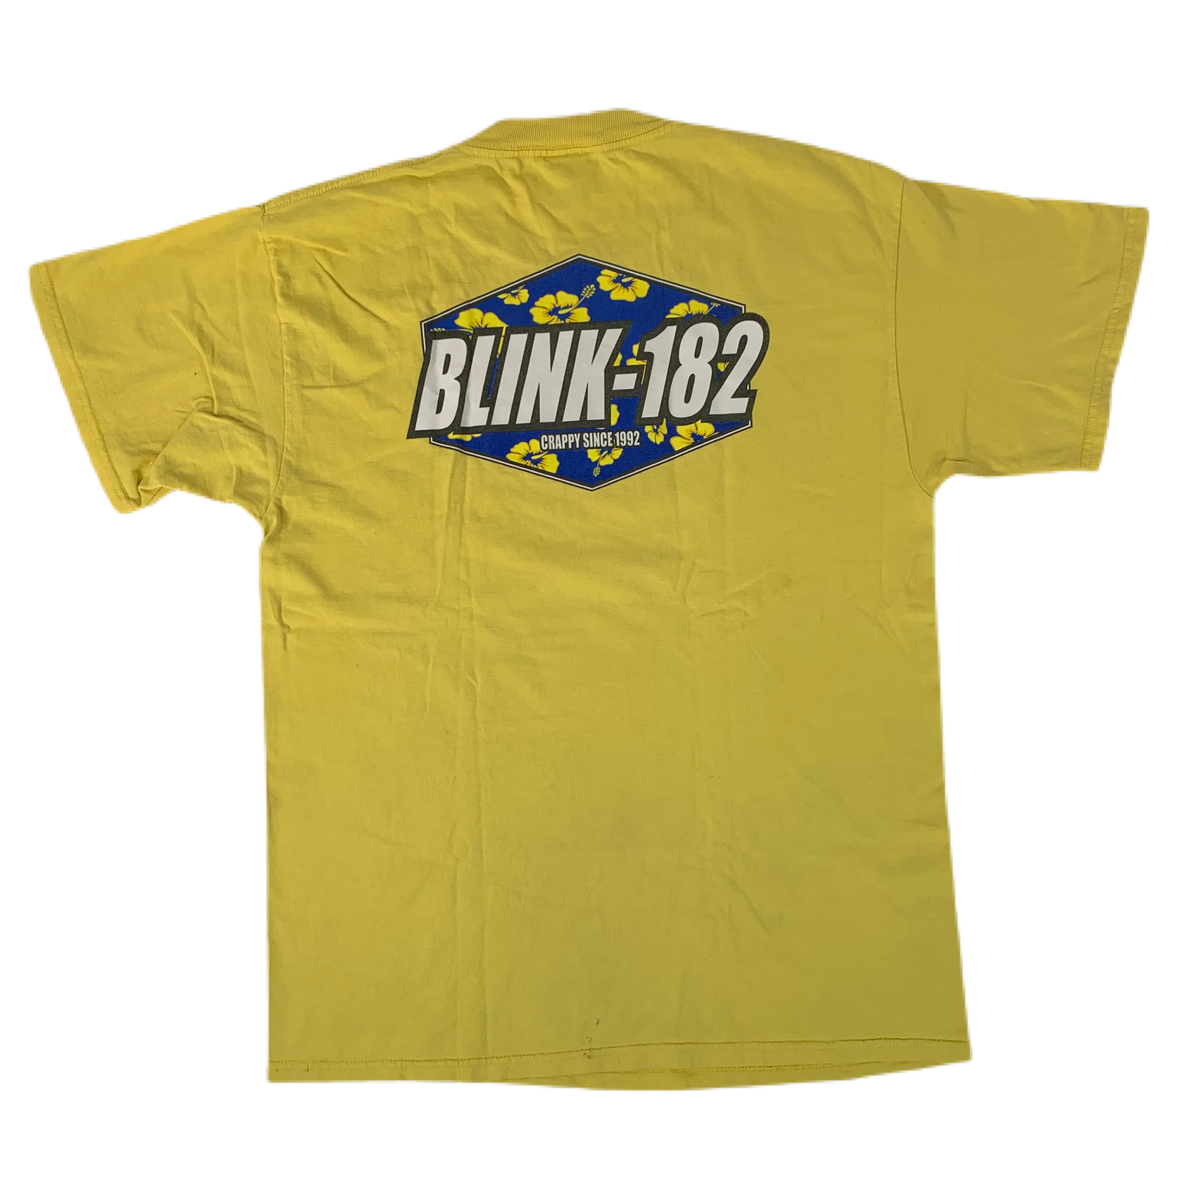 Vintage Blink-182 &quot;Crappy Since 1992&quot; T-Shirt